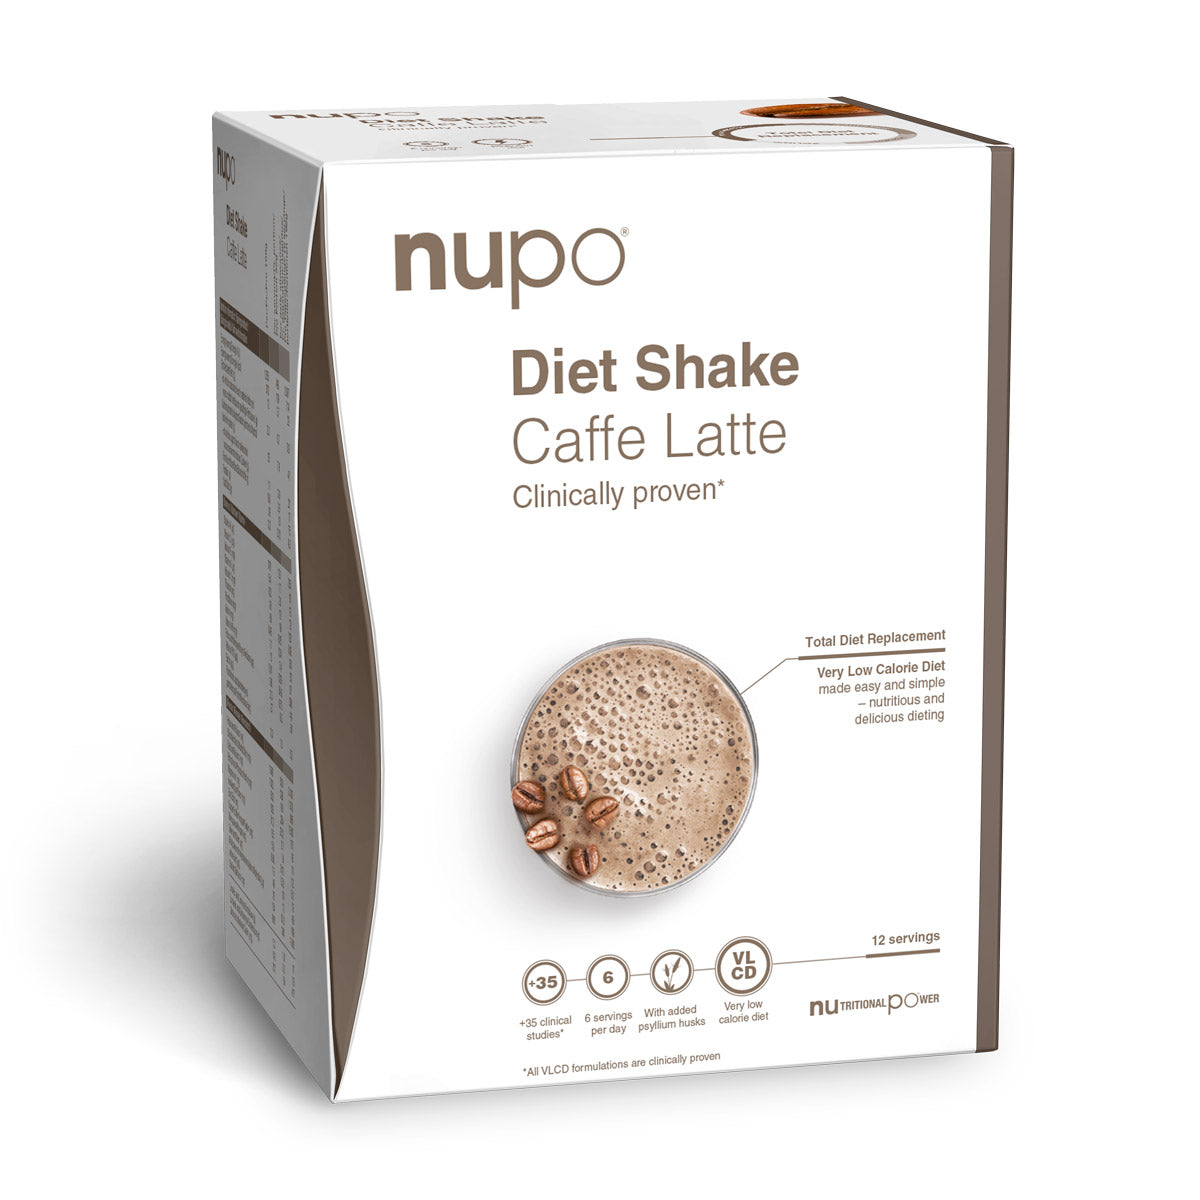 Brug Nupo Diet Shake (384g) - Caffe Latte til en forbedret oplevelse